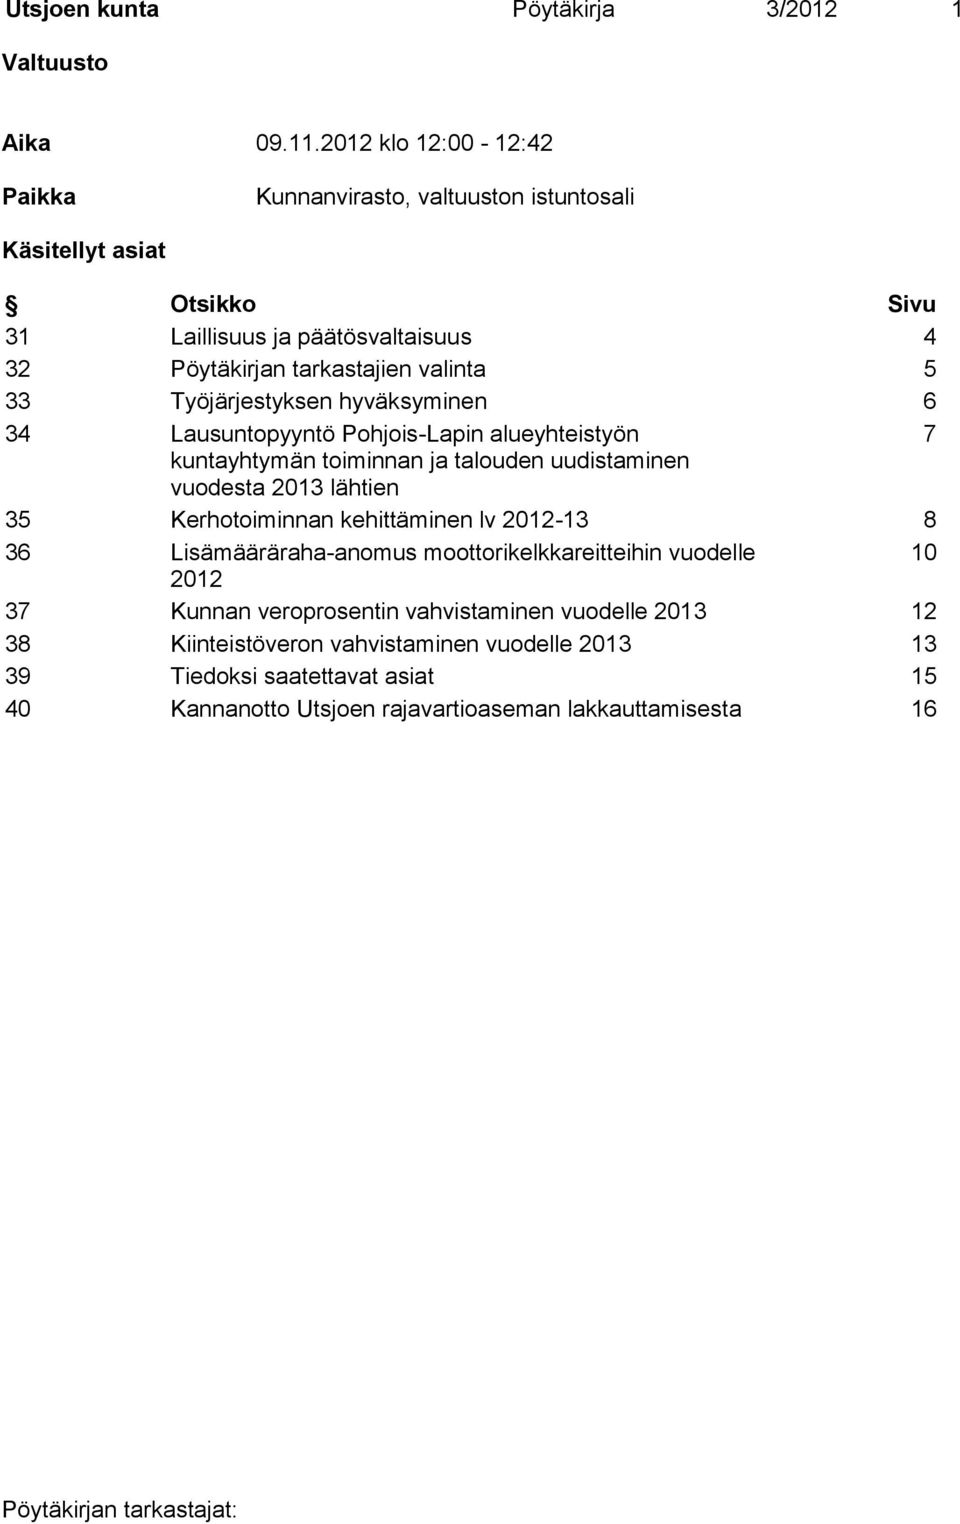 33 Työjärjestyksen hyväksyminen 6 34 Lausuntopyyntö Pohjois-Lapin alueyhteistyön 7 kuntayhtymän toiminnan ja talouden uudistaminen vuodesta 2013 lähtien 35 Kerhotoiminnan